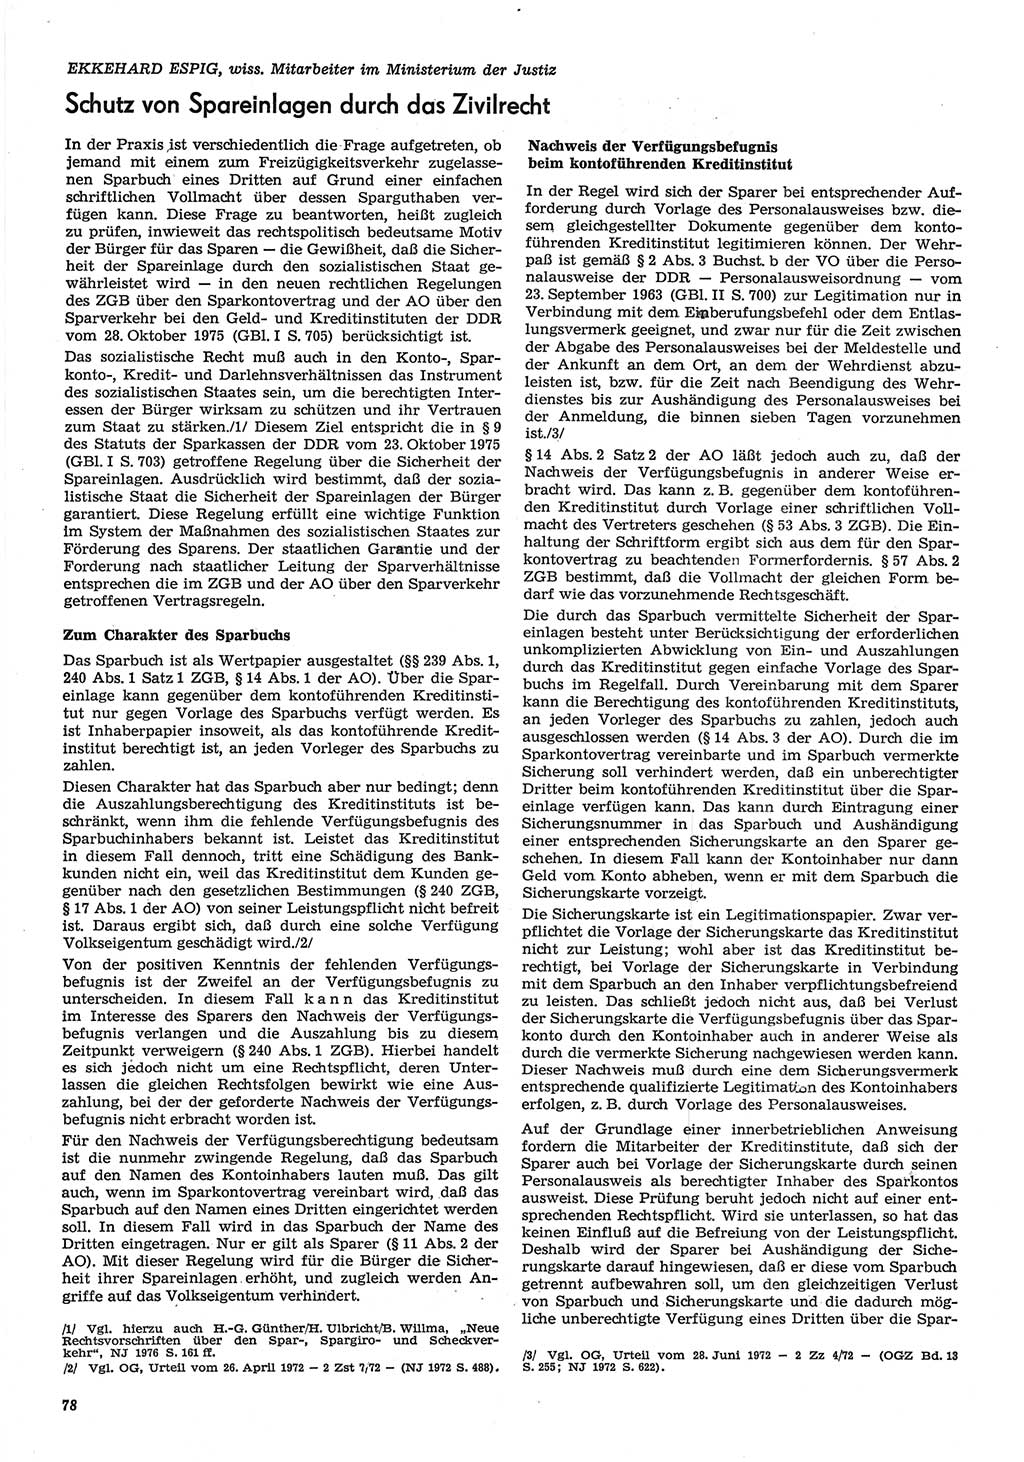 Neue Justiz (NJ), Zeitschrift für Recht und Rechtswissenschaft-Zeitschrift, sozialistisches Recht und Gesetzlichkeit, 31. Jahrgang 1977, Seite 78 (NJ DDR 1977, S. 78)